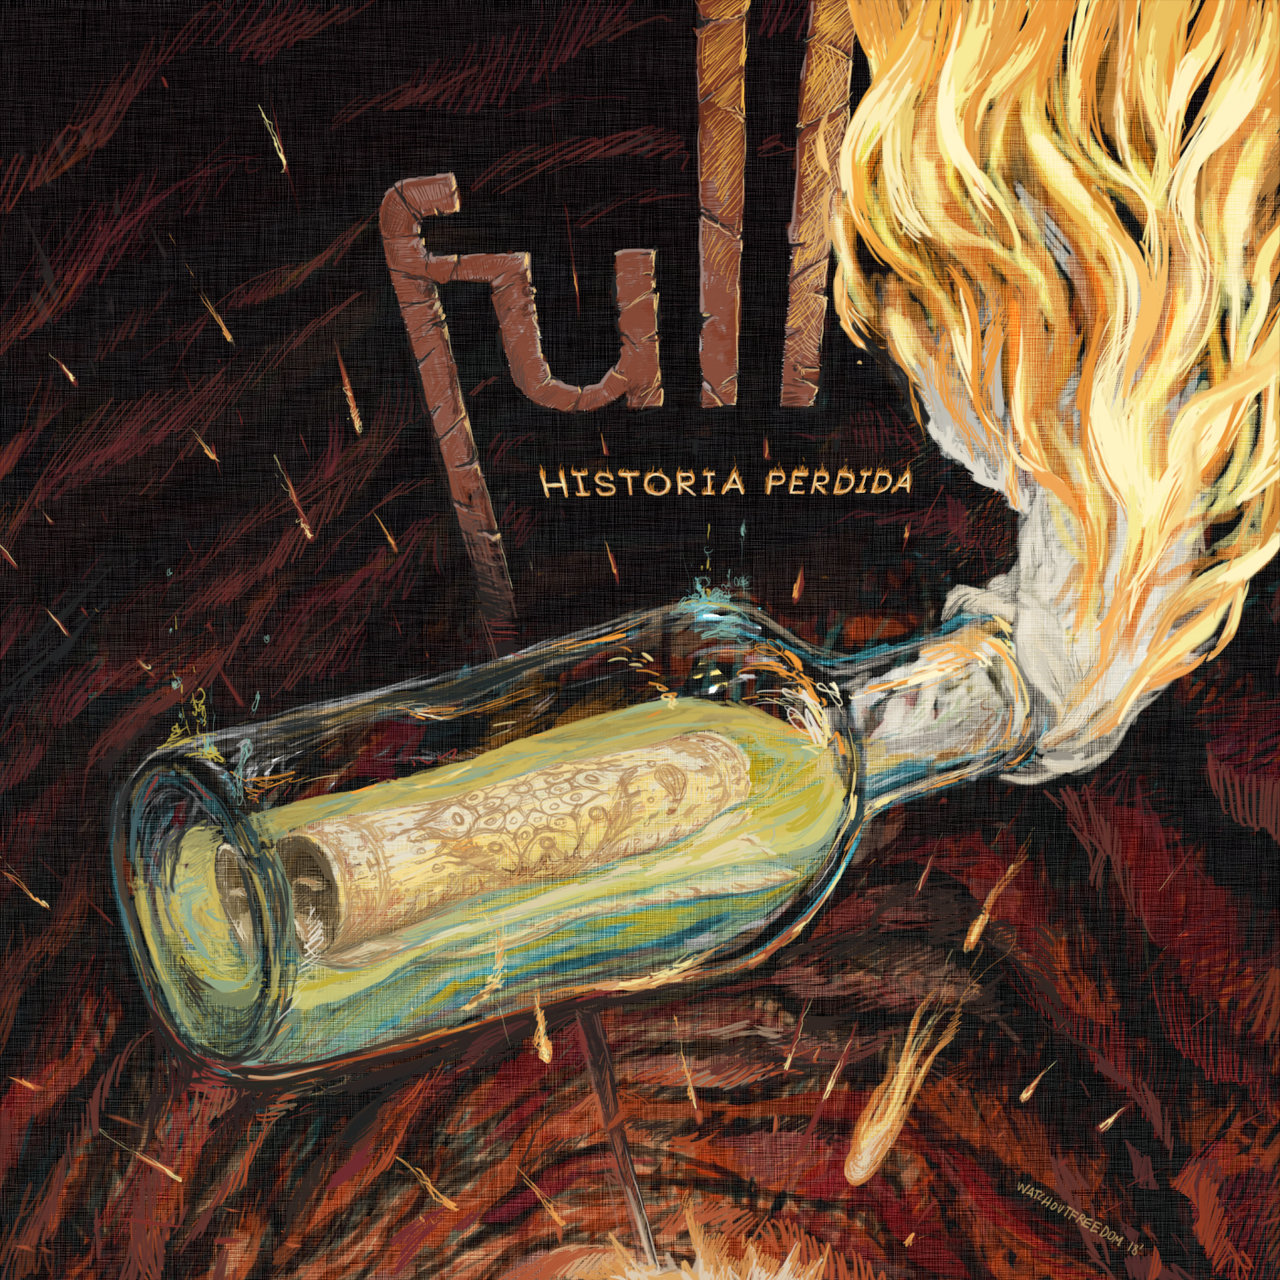 Full — Historia perdida cover artwork